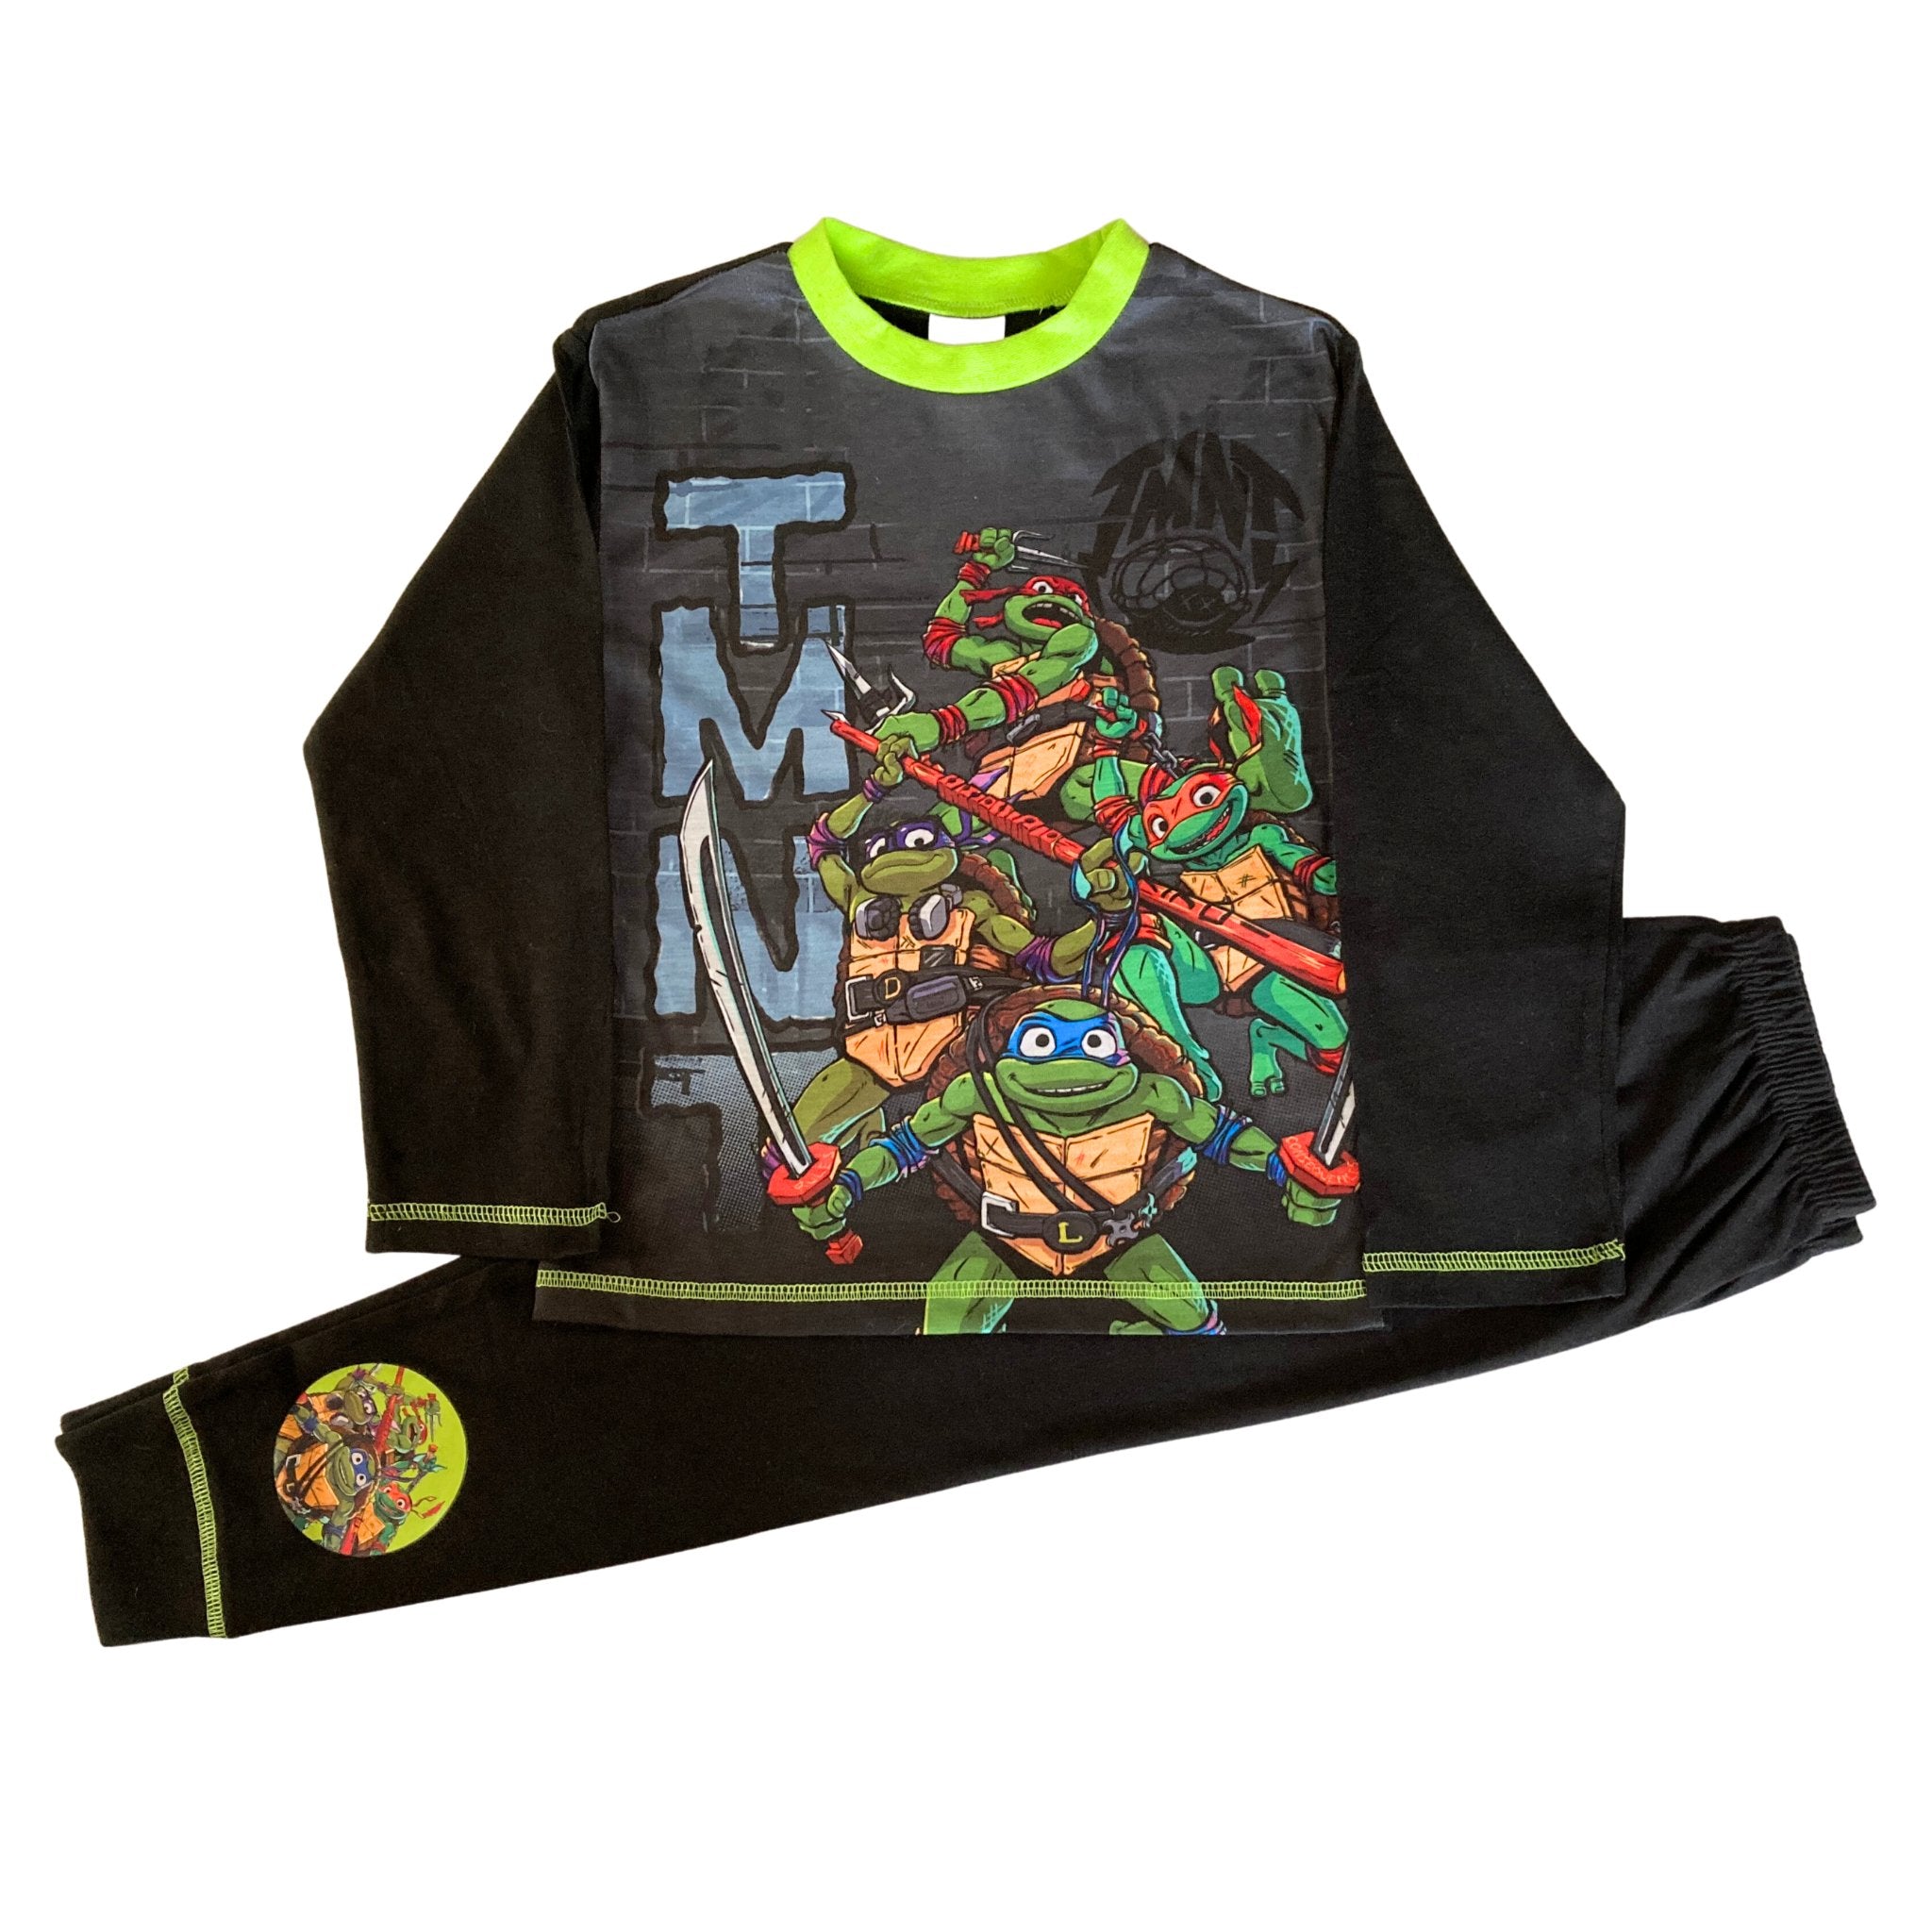 Teenague Mutant Ninja Turtles Boys Short Pyjamas TMNT PJs